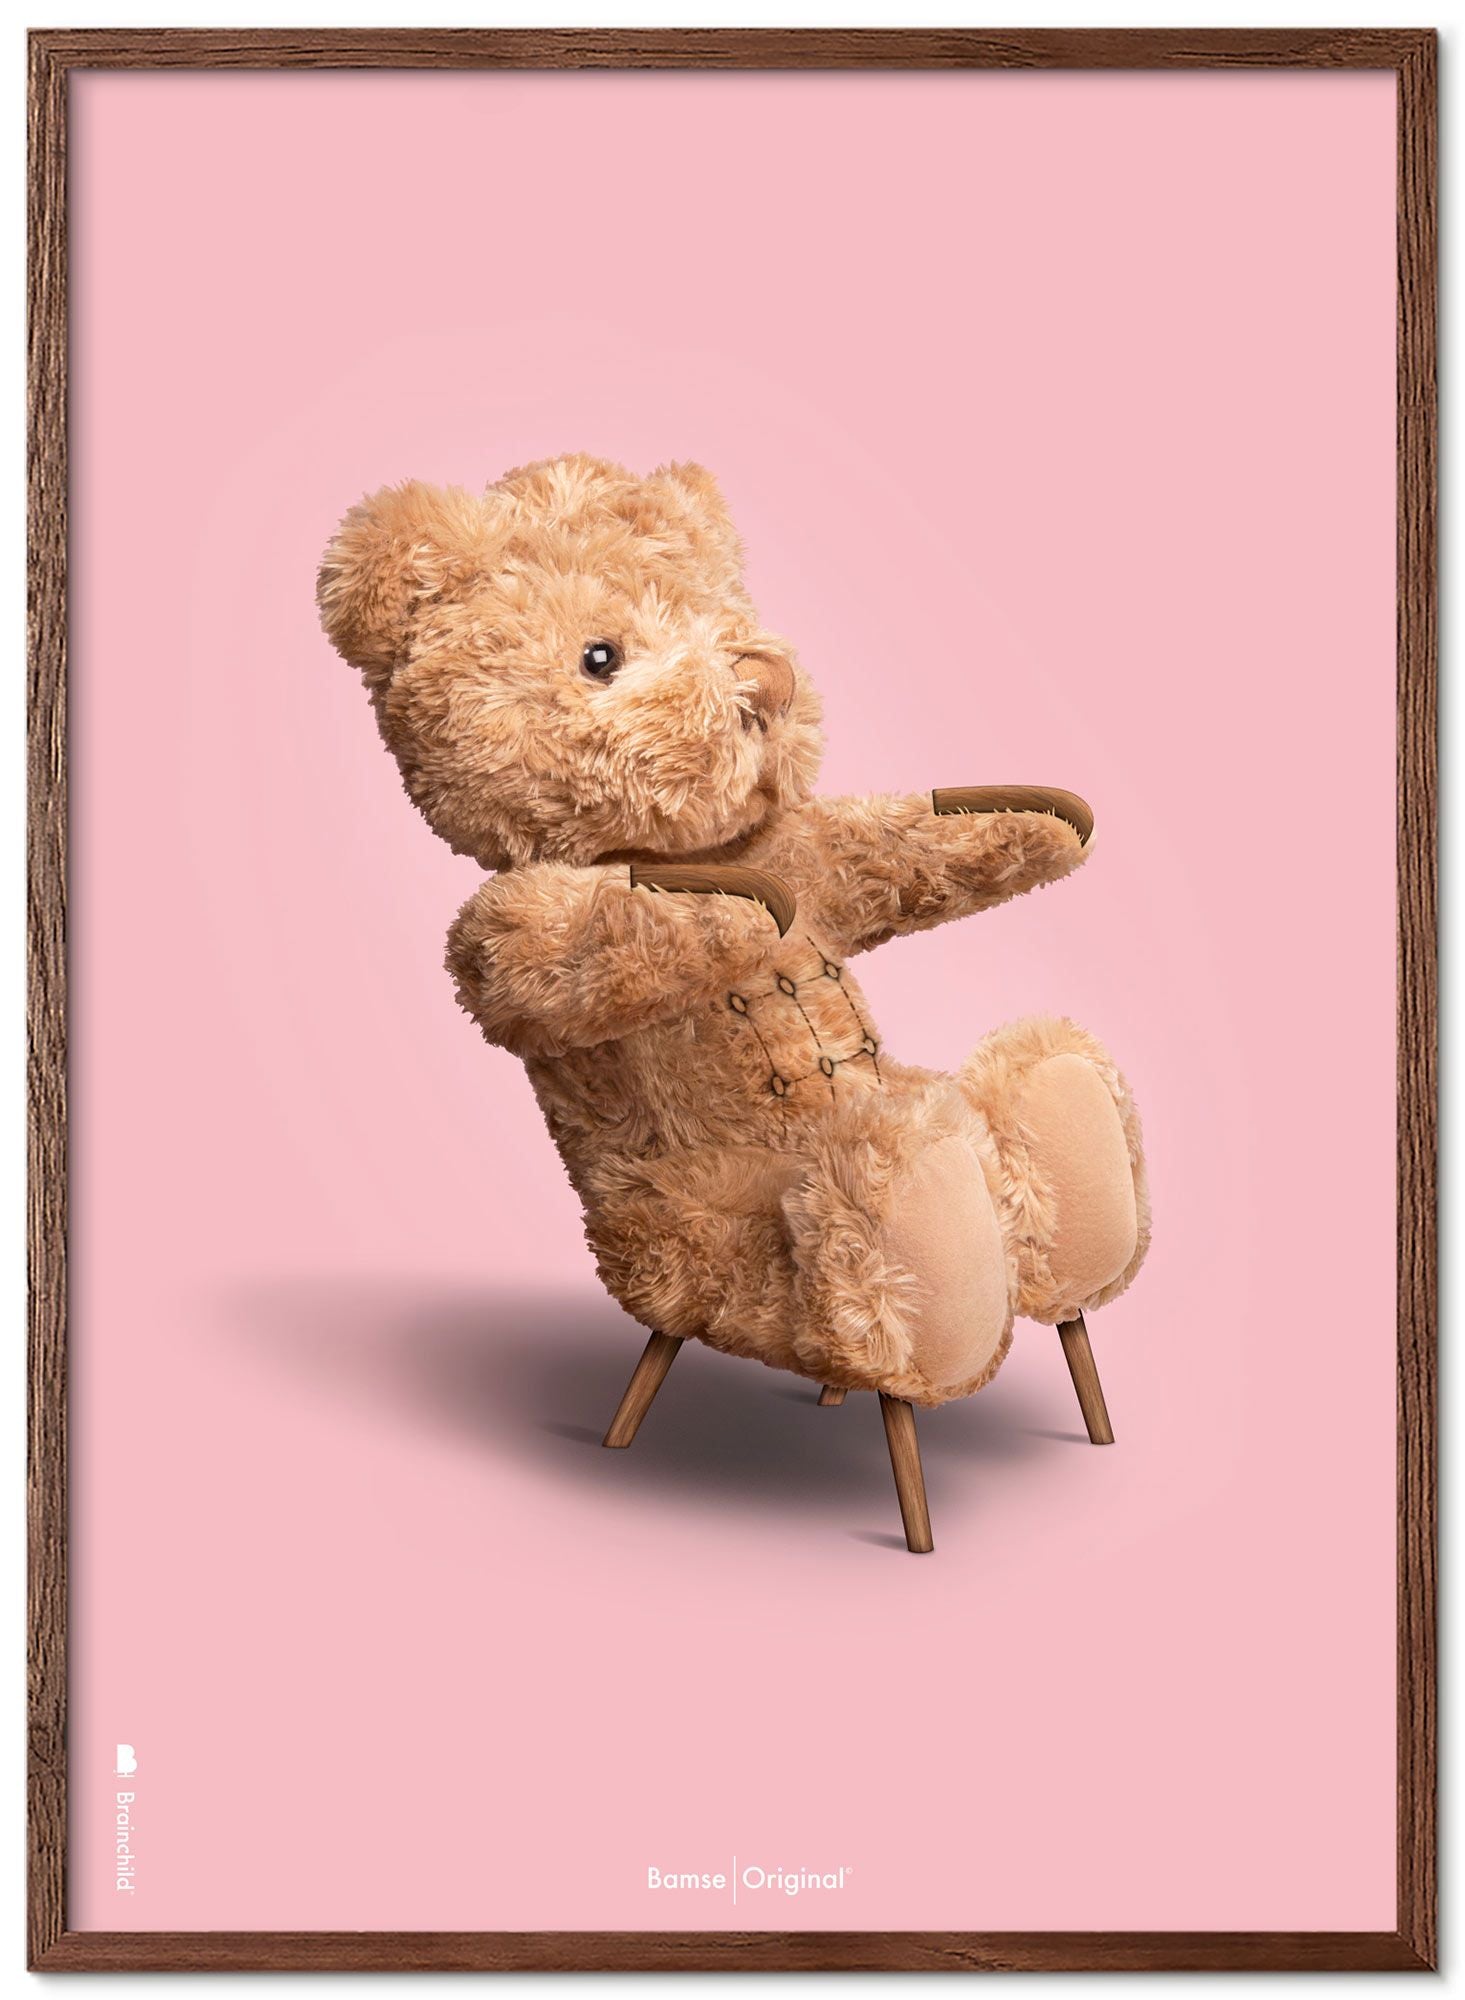 Brainchild Teddy Bear Classic plakát z plakátu vyrobený z tmavého dřeva RAM 30x40 cm, růžové pozadí